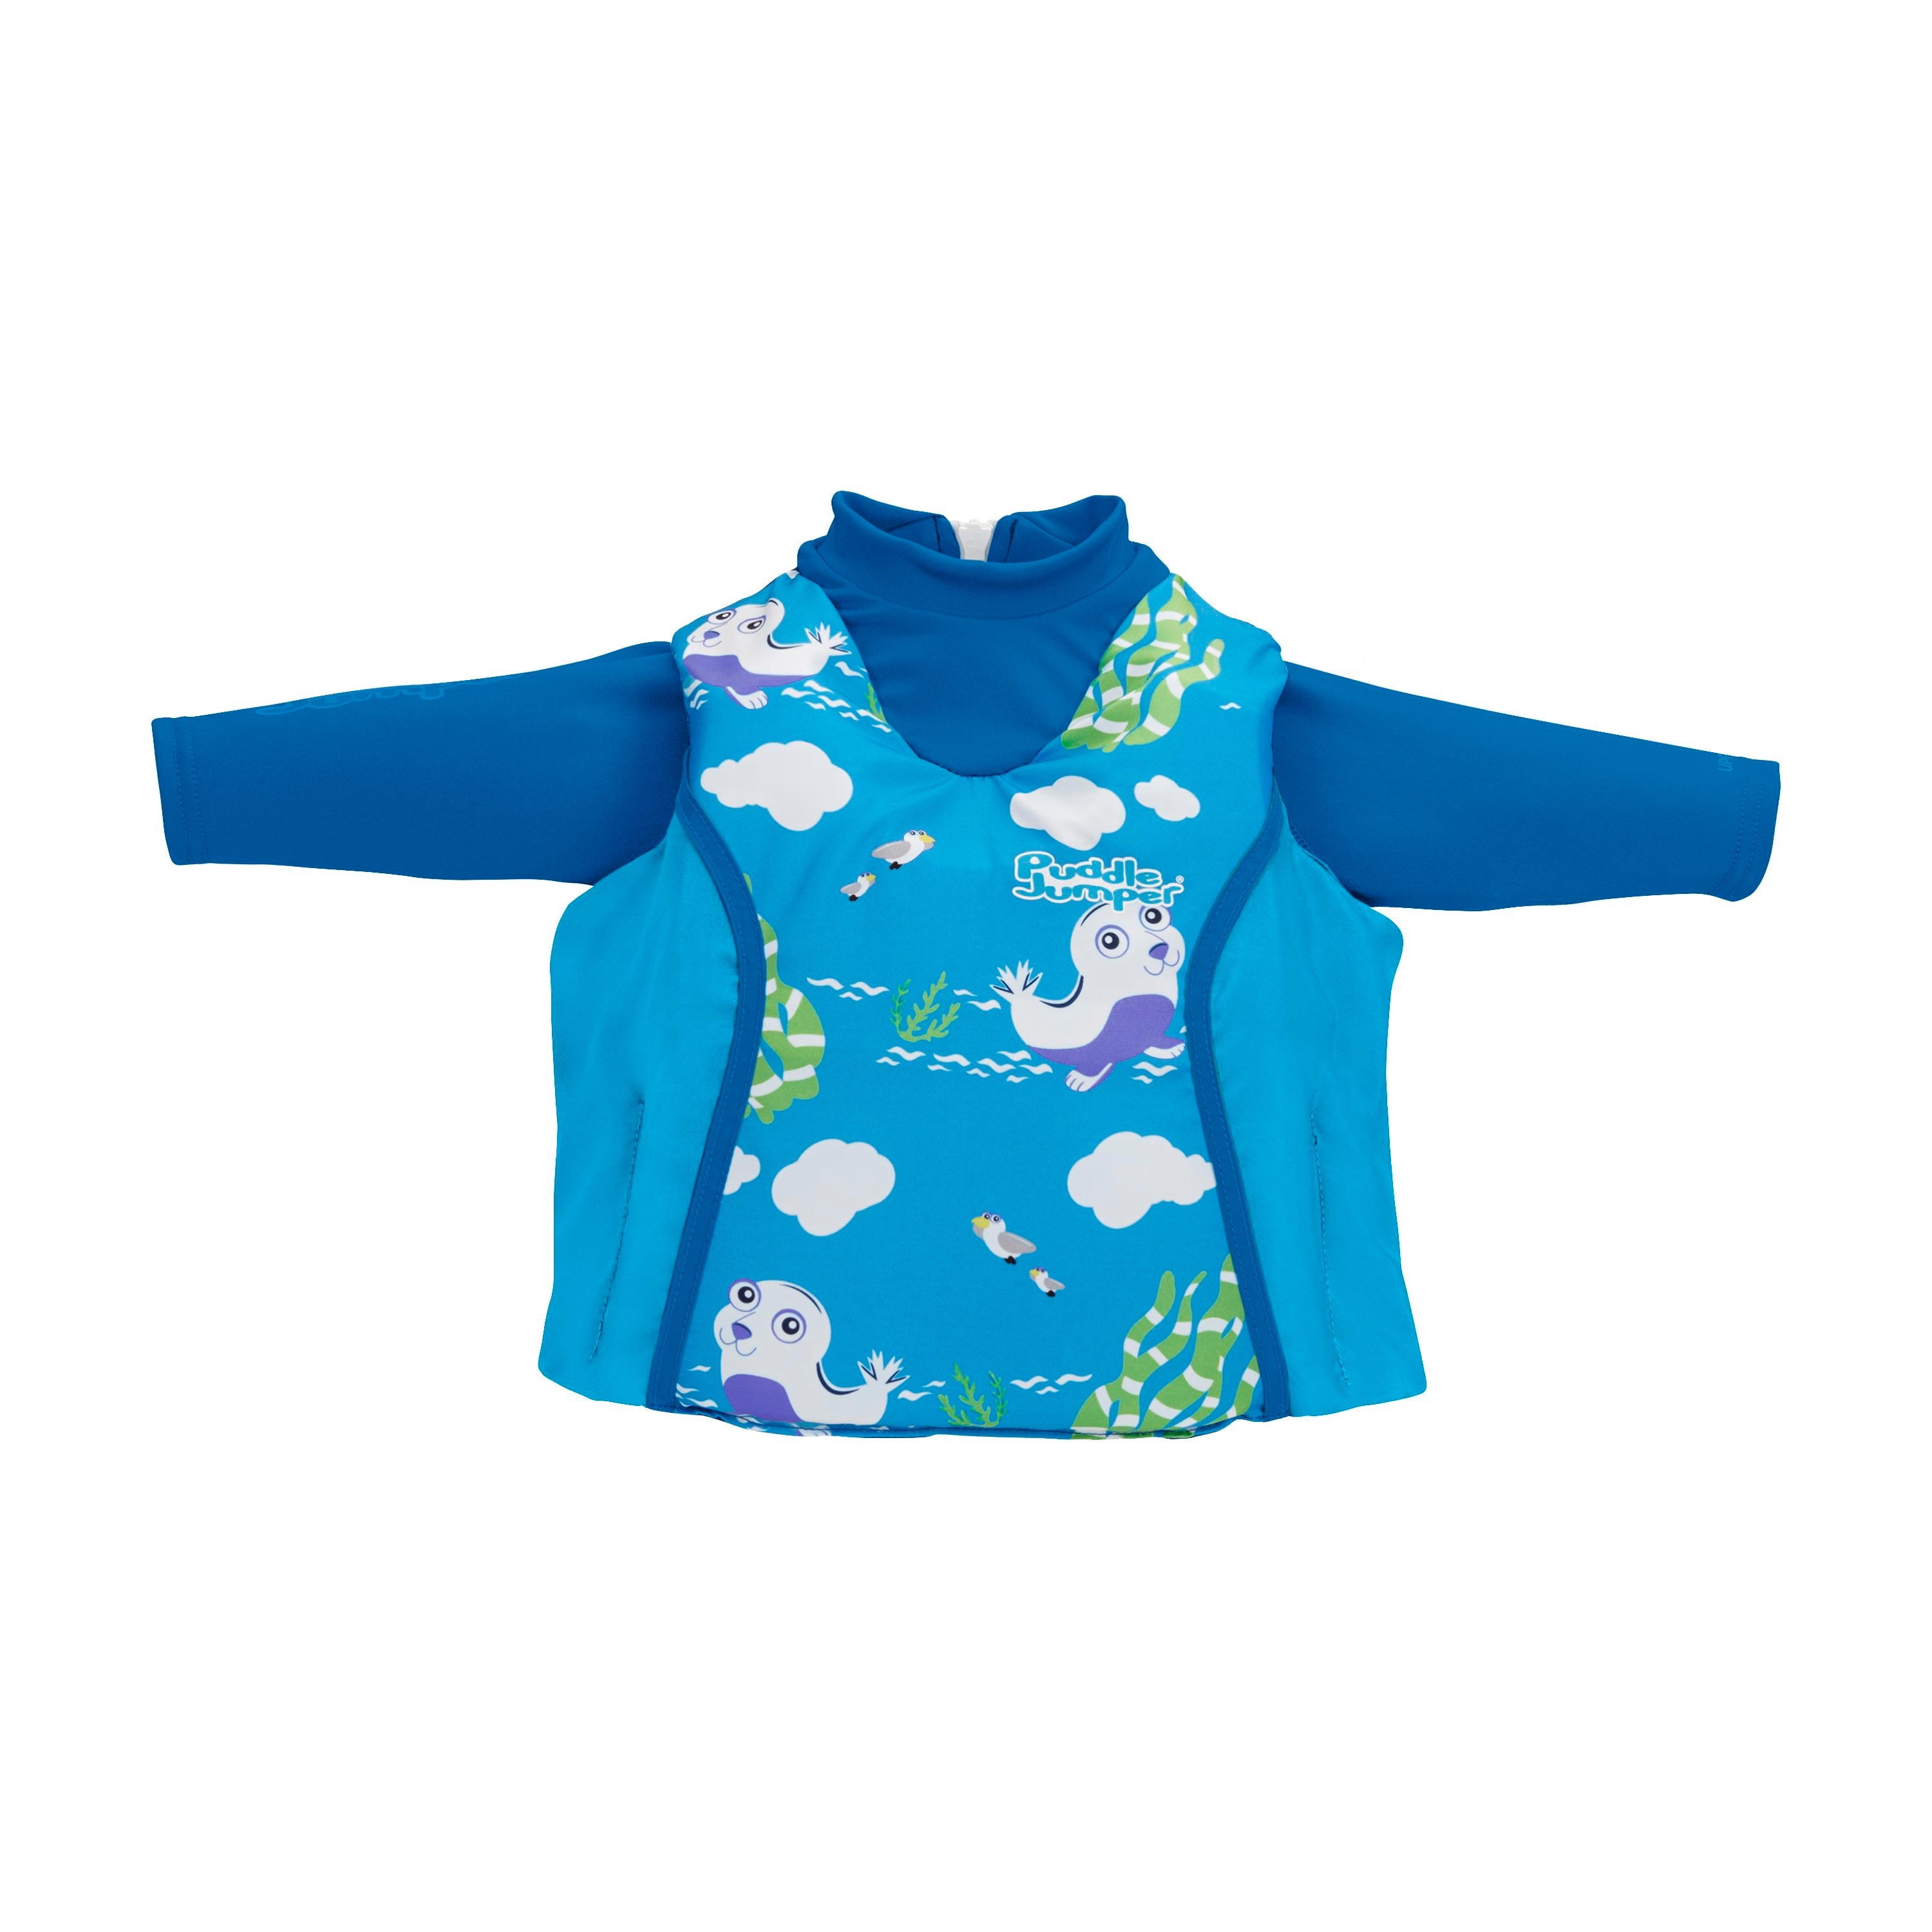 Coleman Puddle Jumper Kids Life Jacket Preserver Vest Mermaids UPF 50 PFD for sale online 